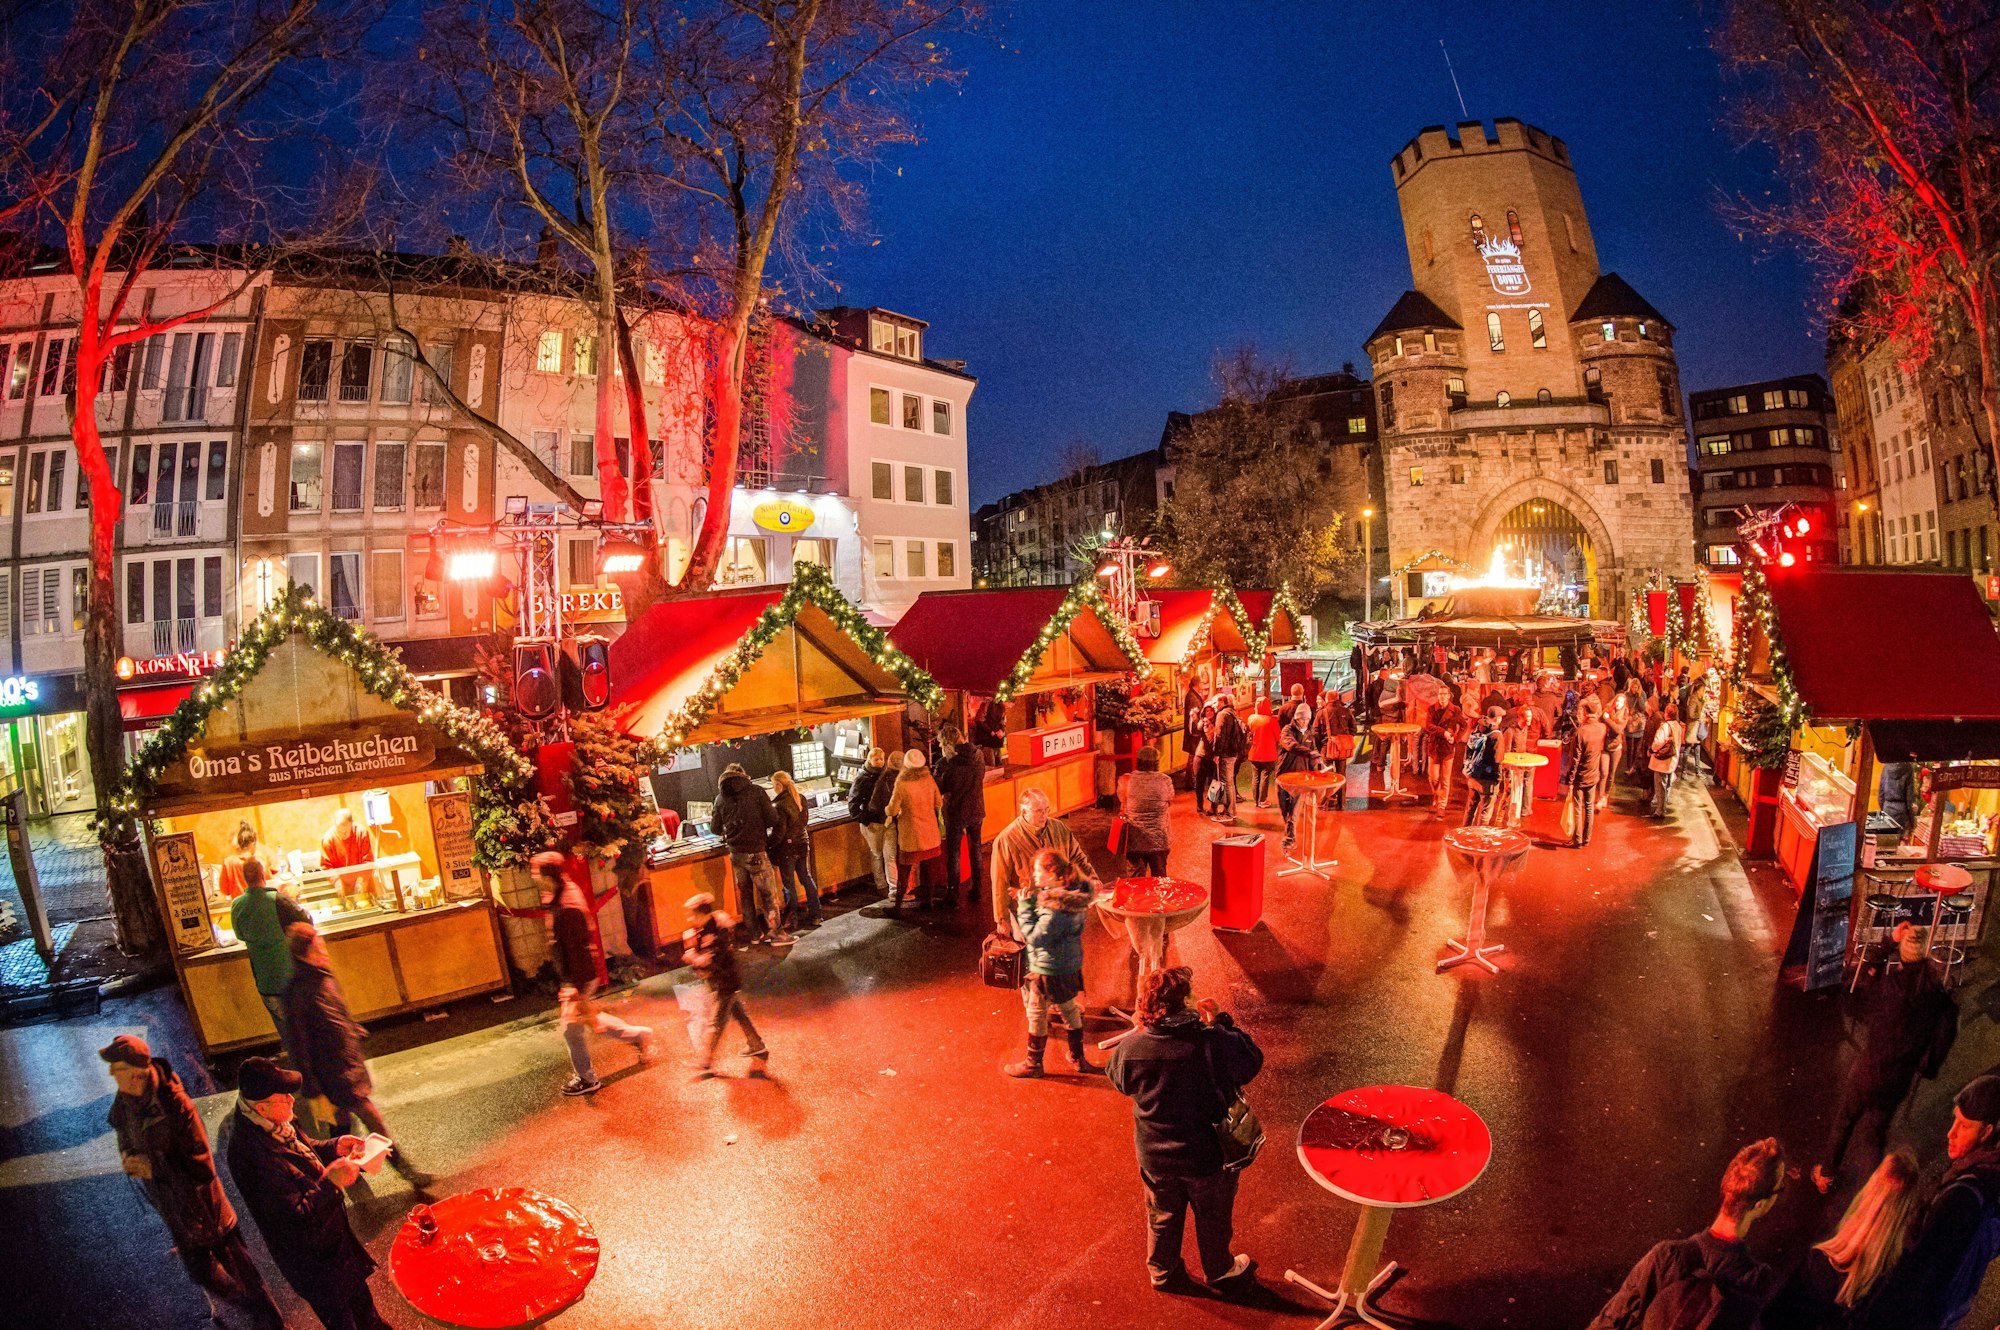 Weihnachtsmarkt auf dem Chlodwigplatz mit Severinstorburg im Hintergrund.